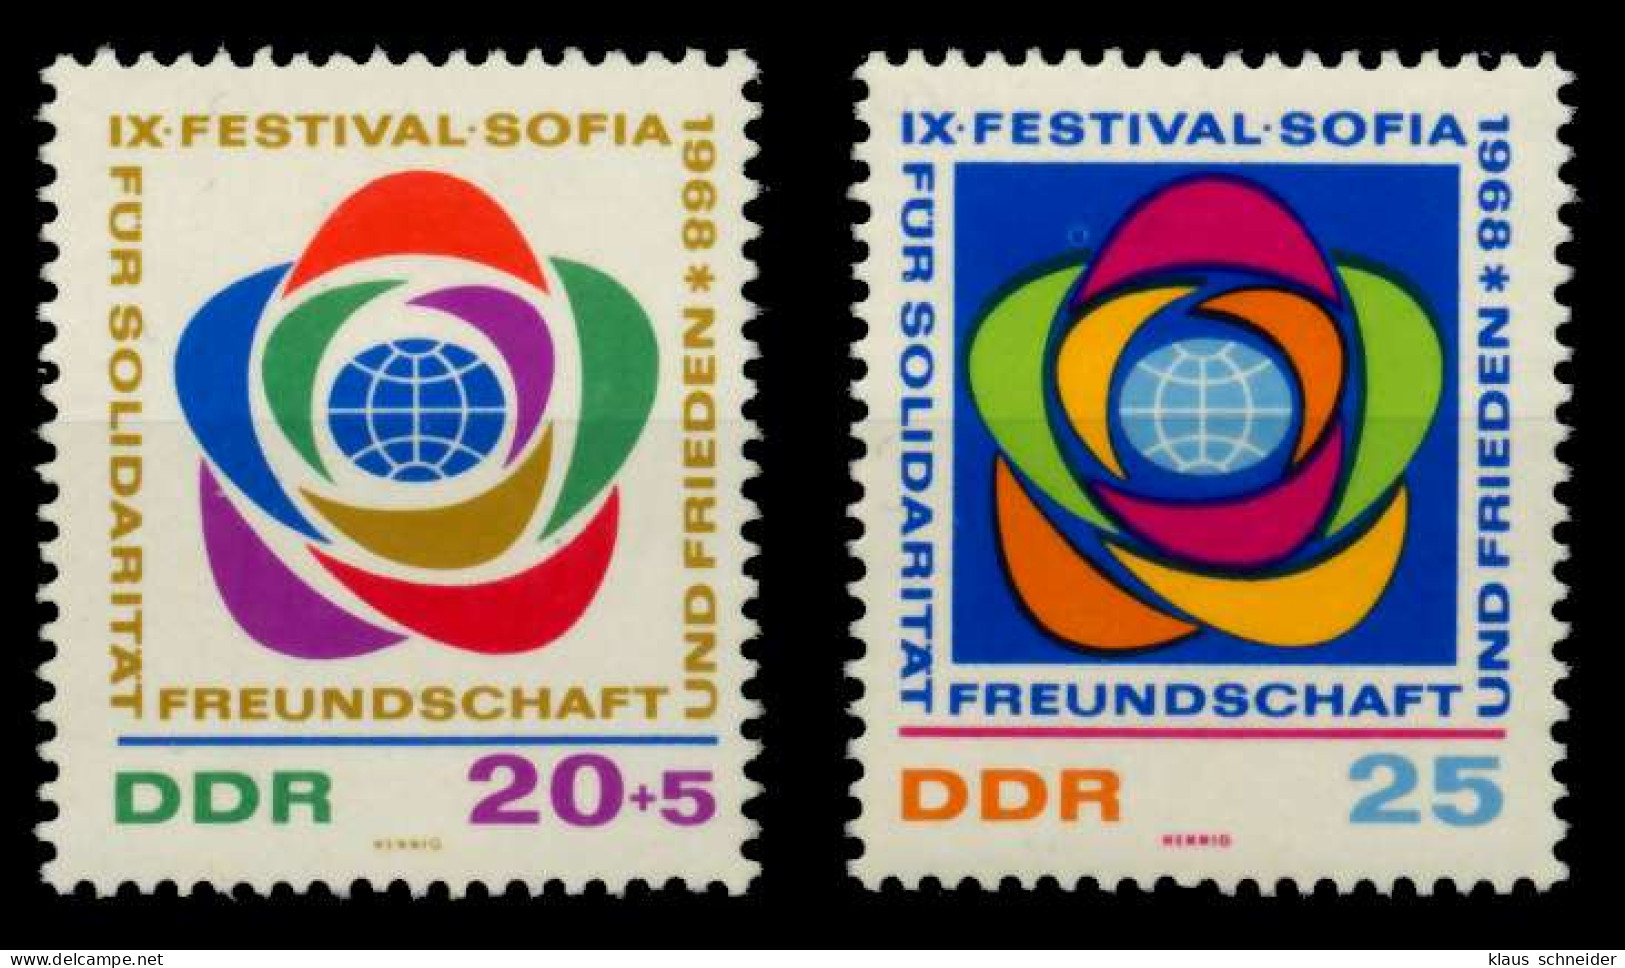 DDR 1968 Nr 1377-1378 Postfrisch S71DAB6 - Unused Stamps